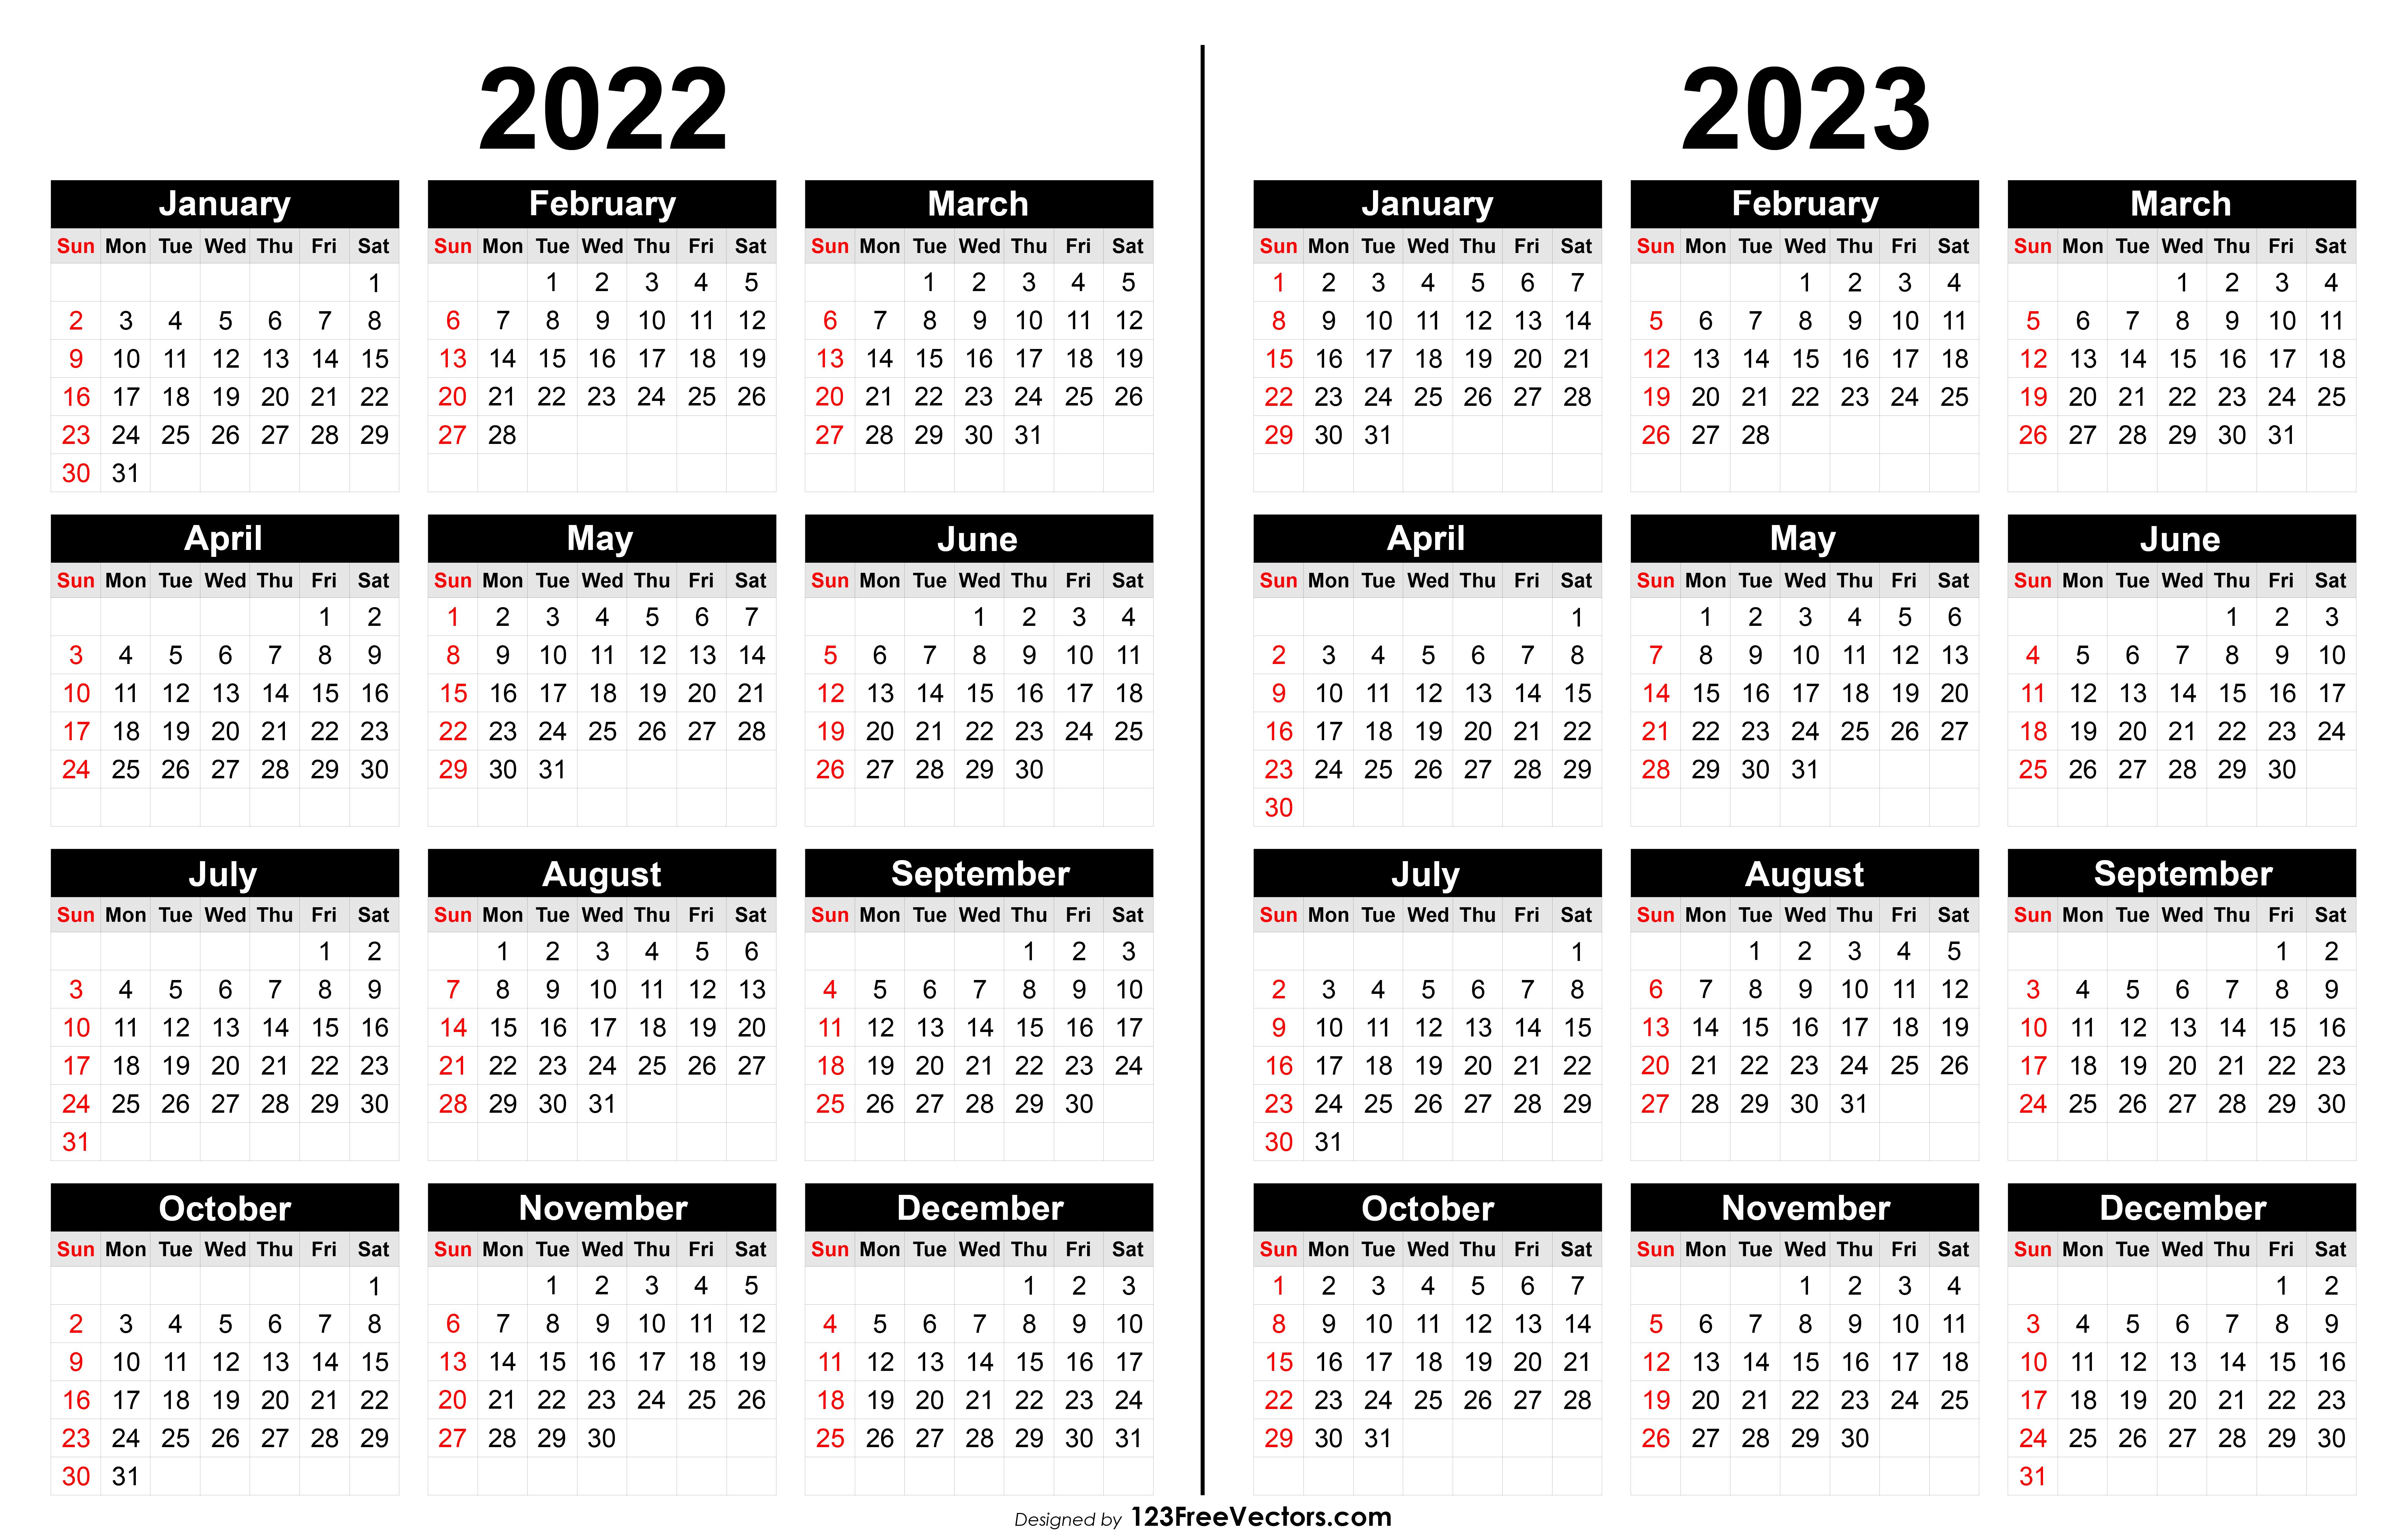 2023 Calendar Wallpapers - Top Free 2023 Calendar Backgrounds ...